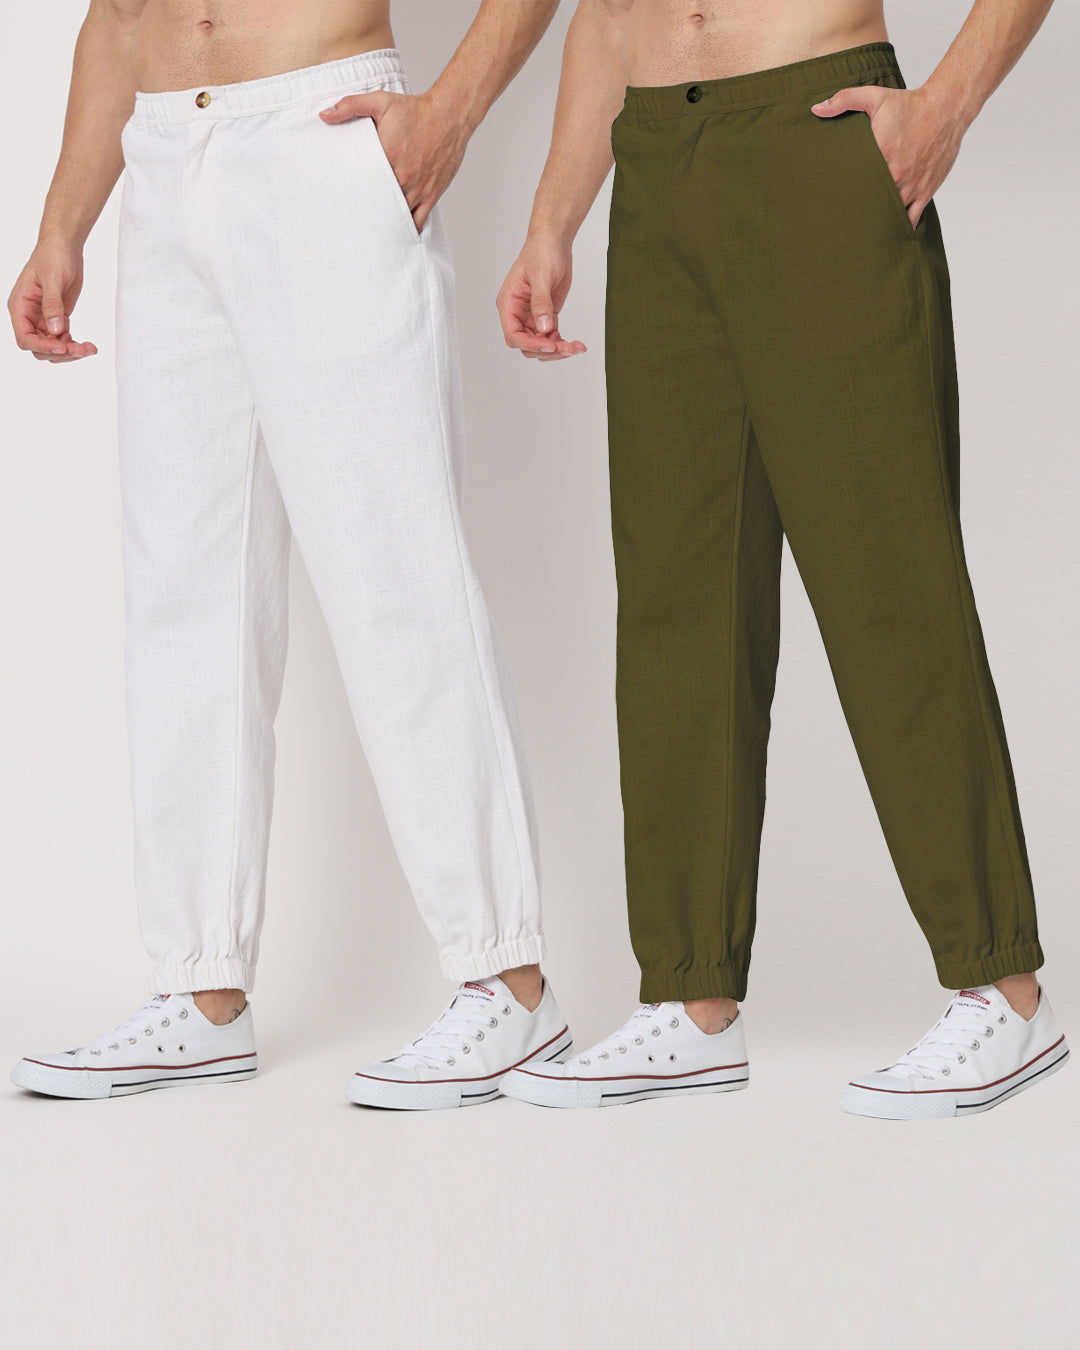 Combo: White & Spring Green Jog Men's Pants - Set of 2